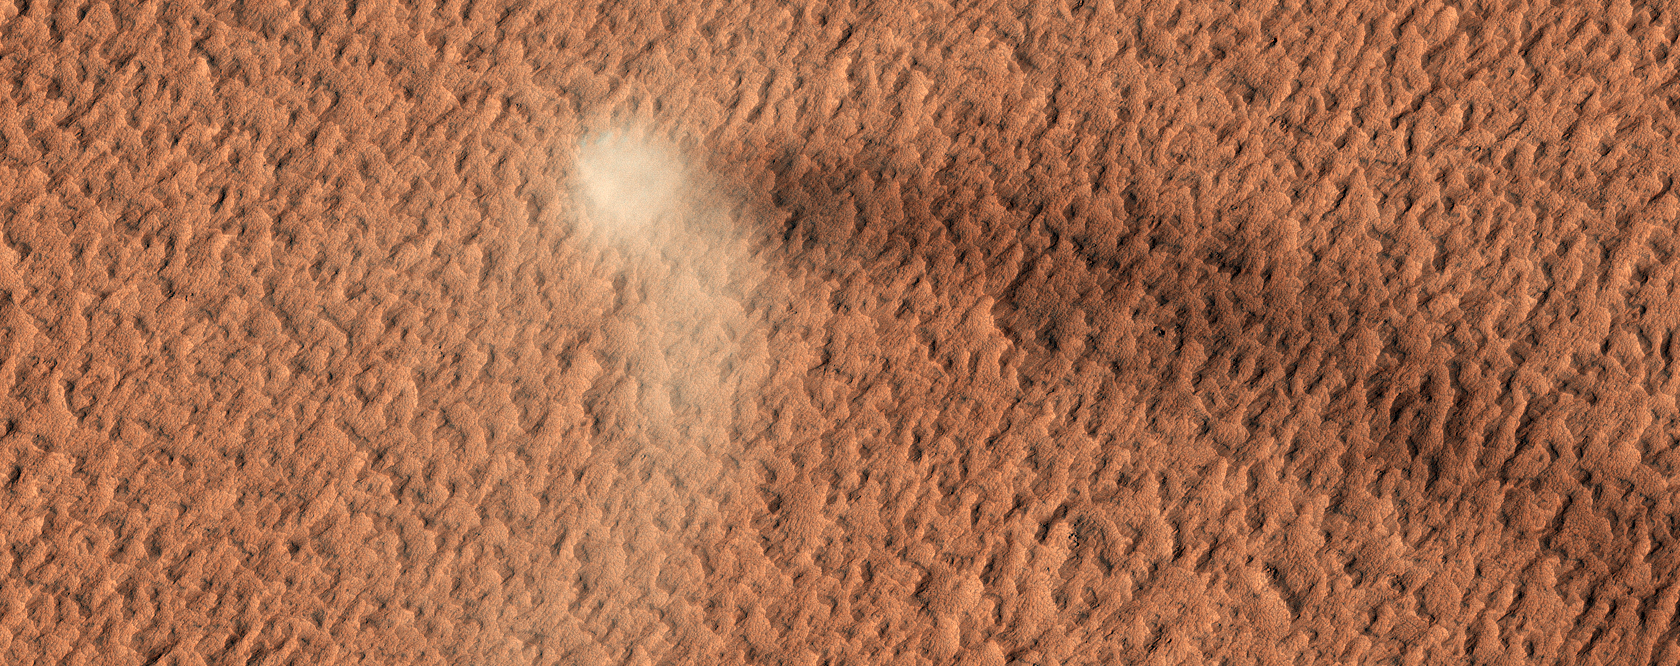 Tormenta de arena del planeta Marte